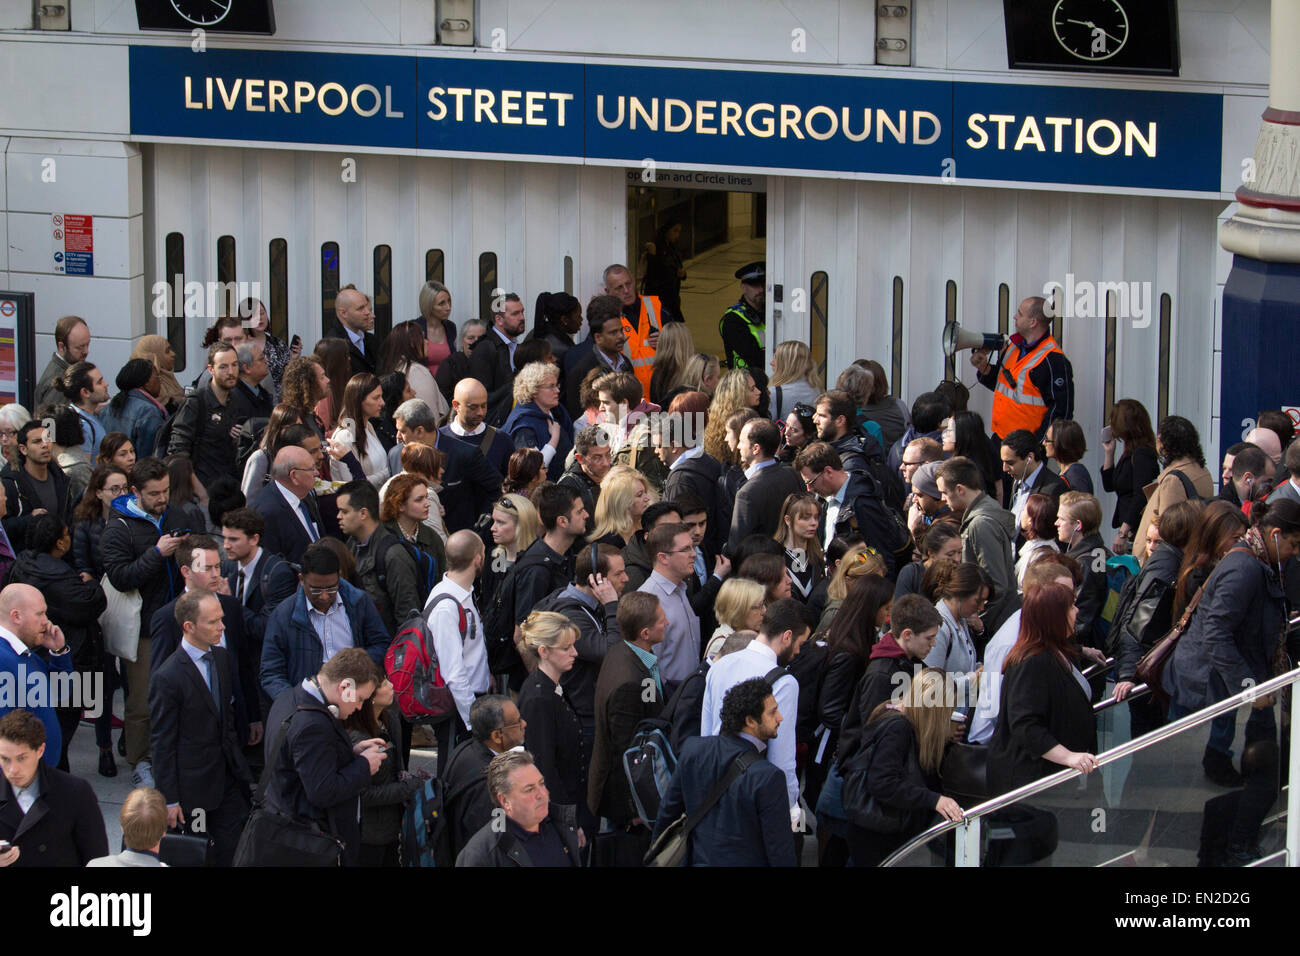 Kontrolle von Menschenmengen auf die Londoner U-Bahn, nach Liverpool Street u-Bahnstation ist während der Hauptverkehrszeit Verzögerungen verursacht geschlossen. Stockfoto